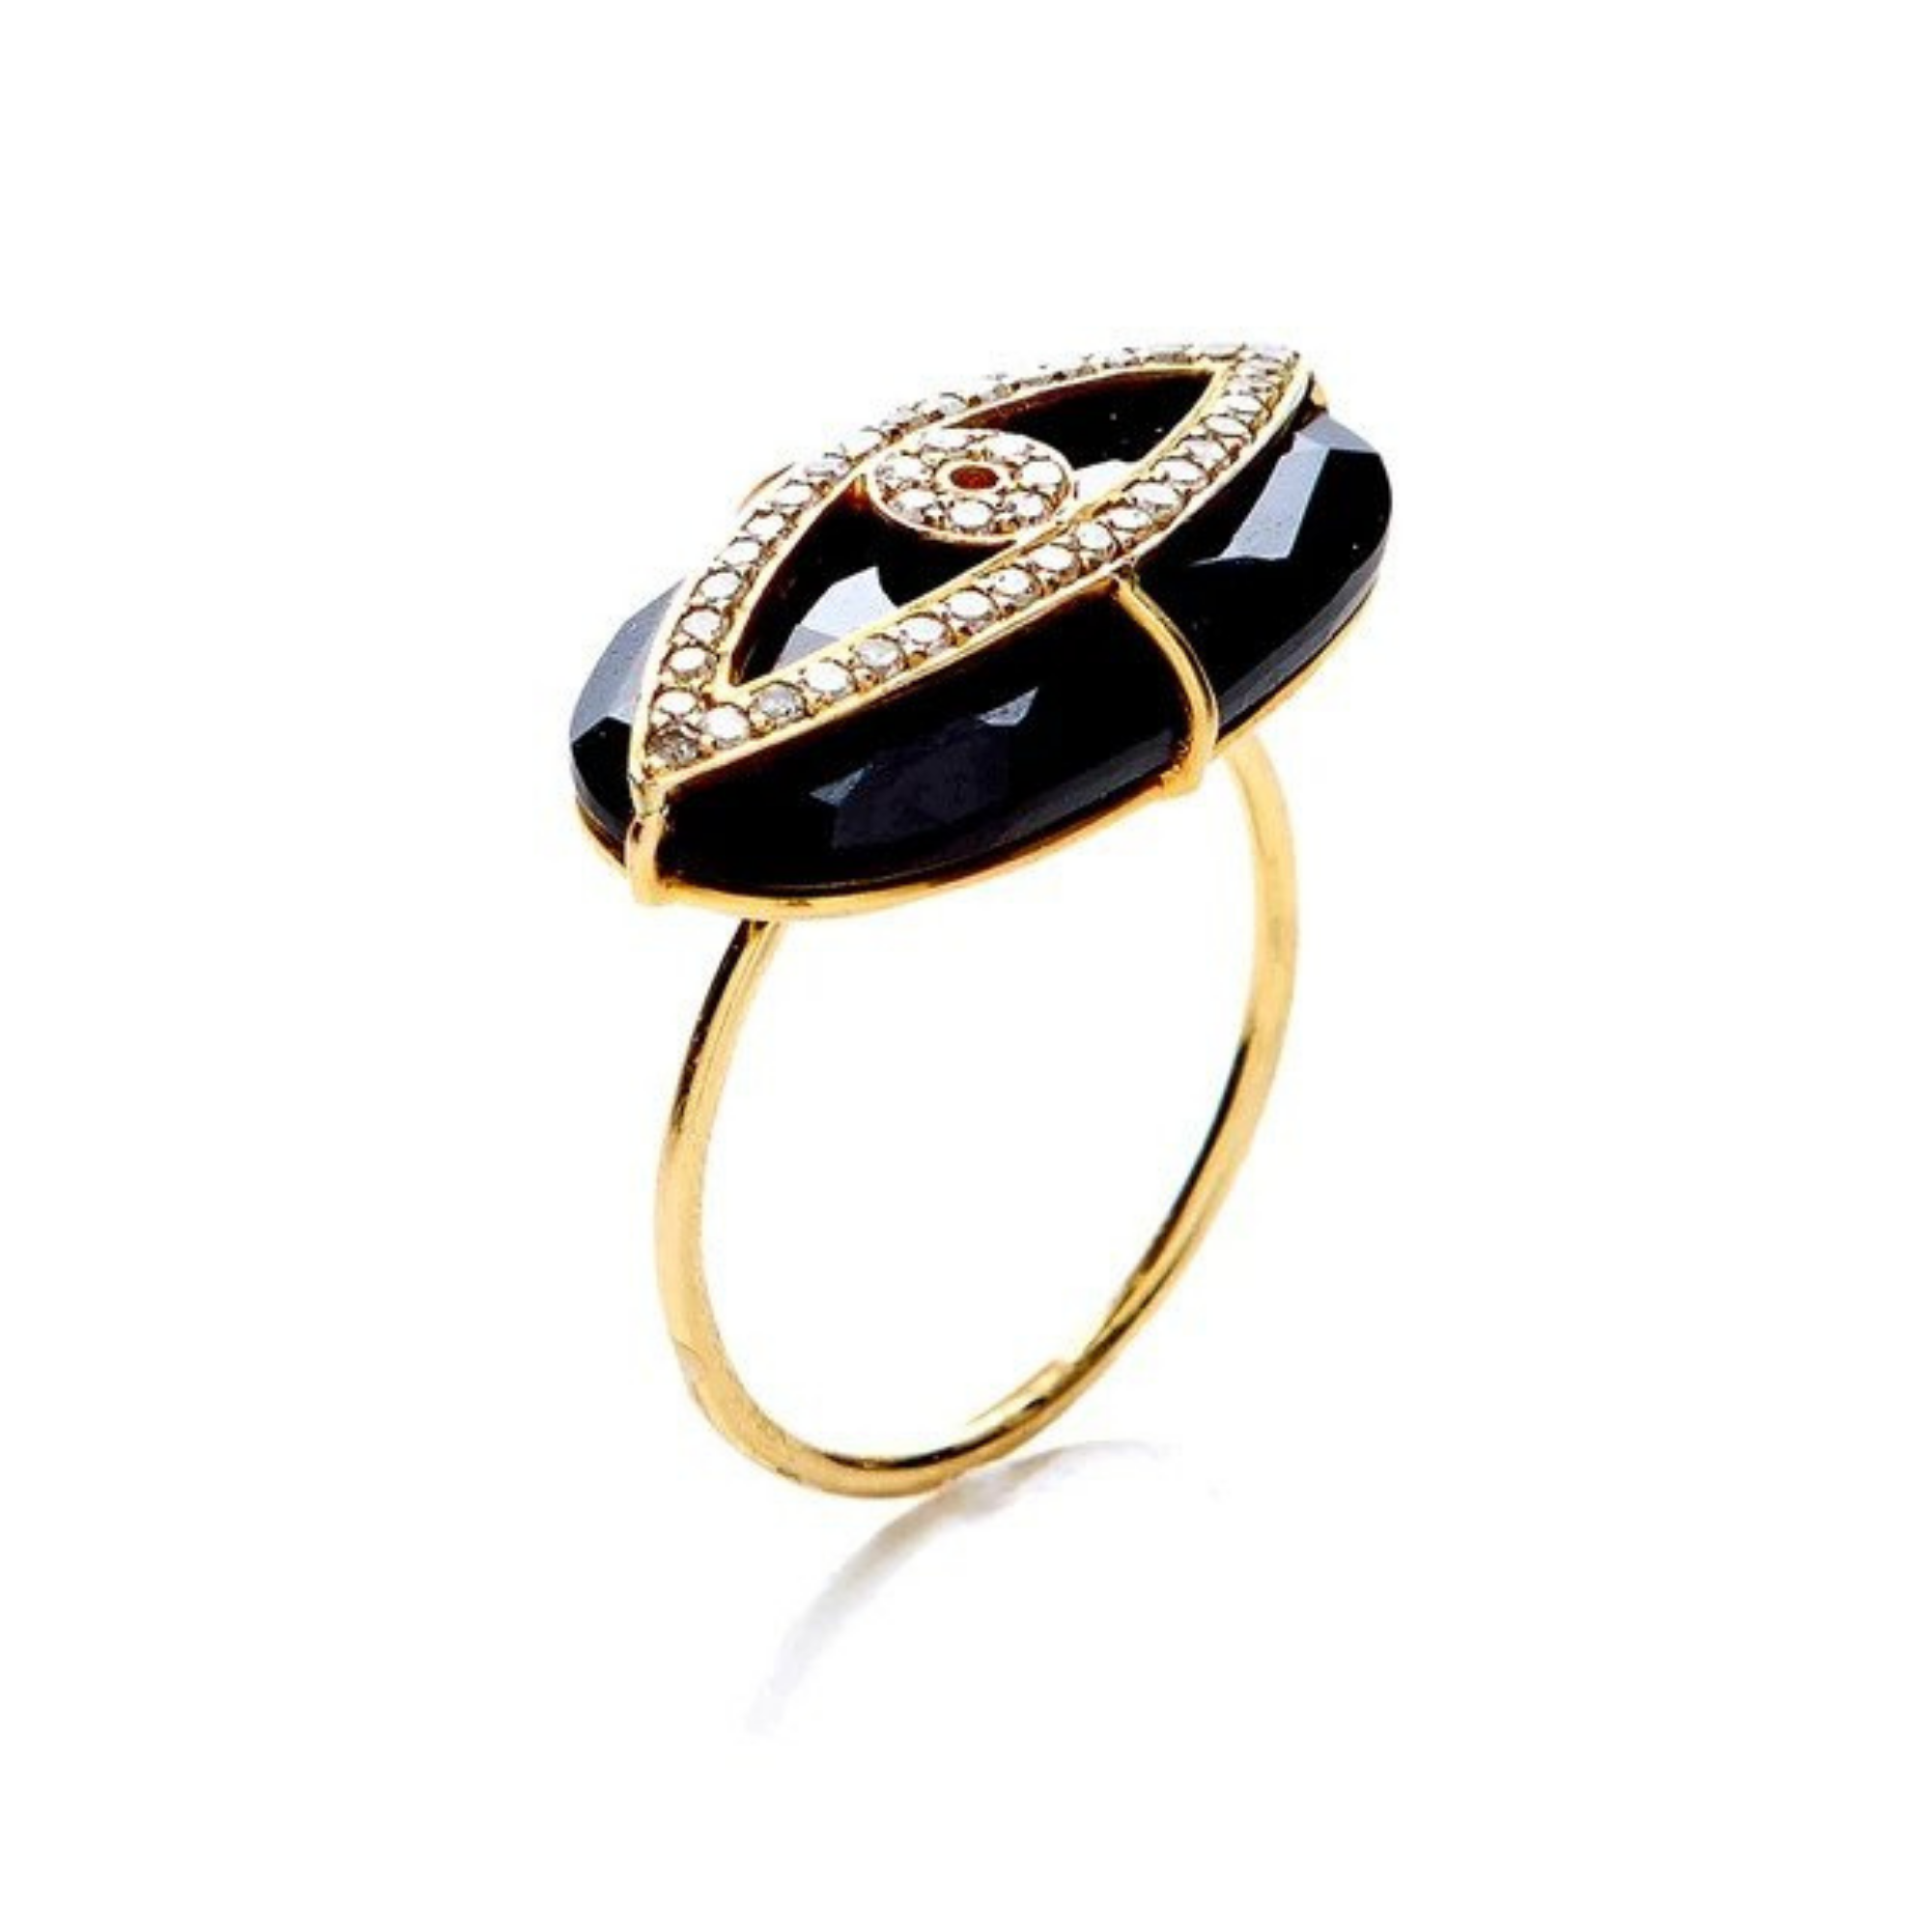 Nush Black Onyx Evil Eye Ring, $2,535